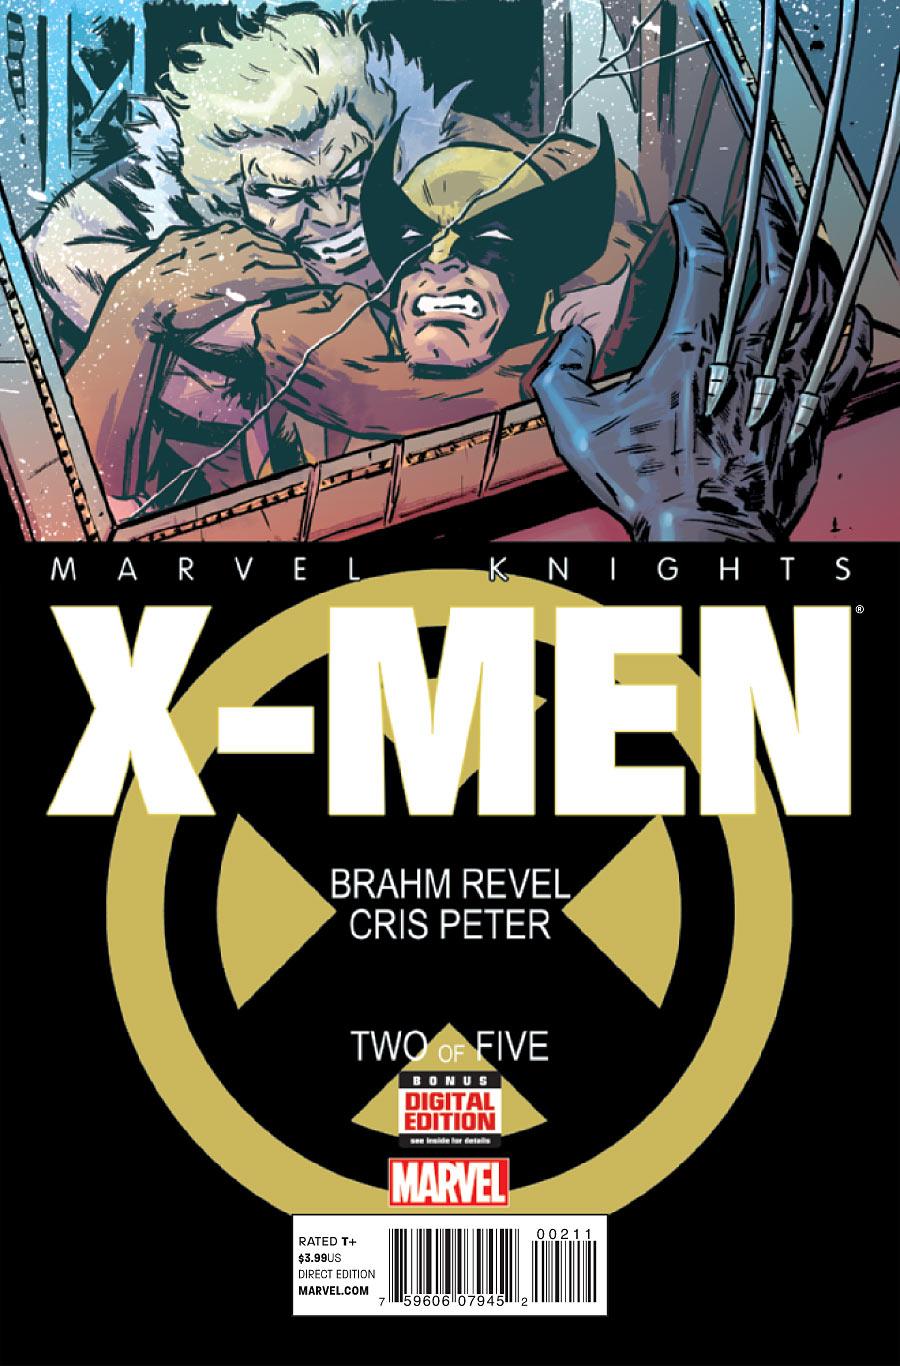 Marvel Knights: X-Men Vol. 1 #2